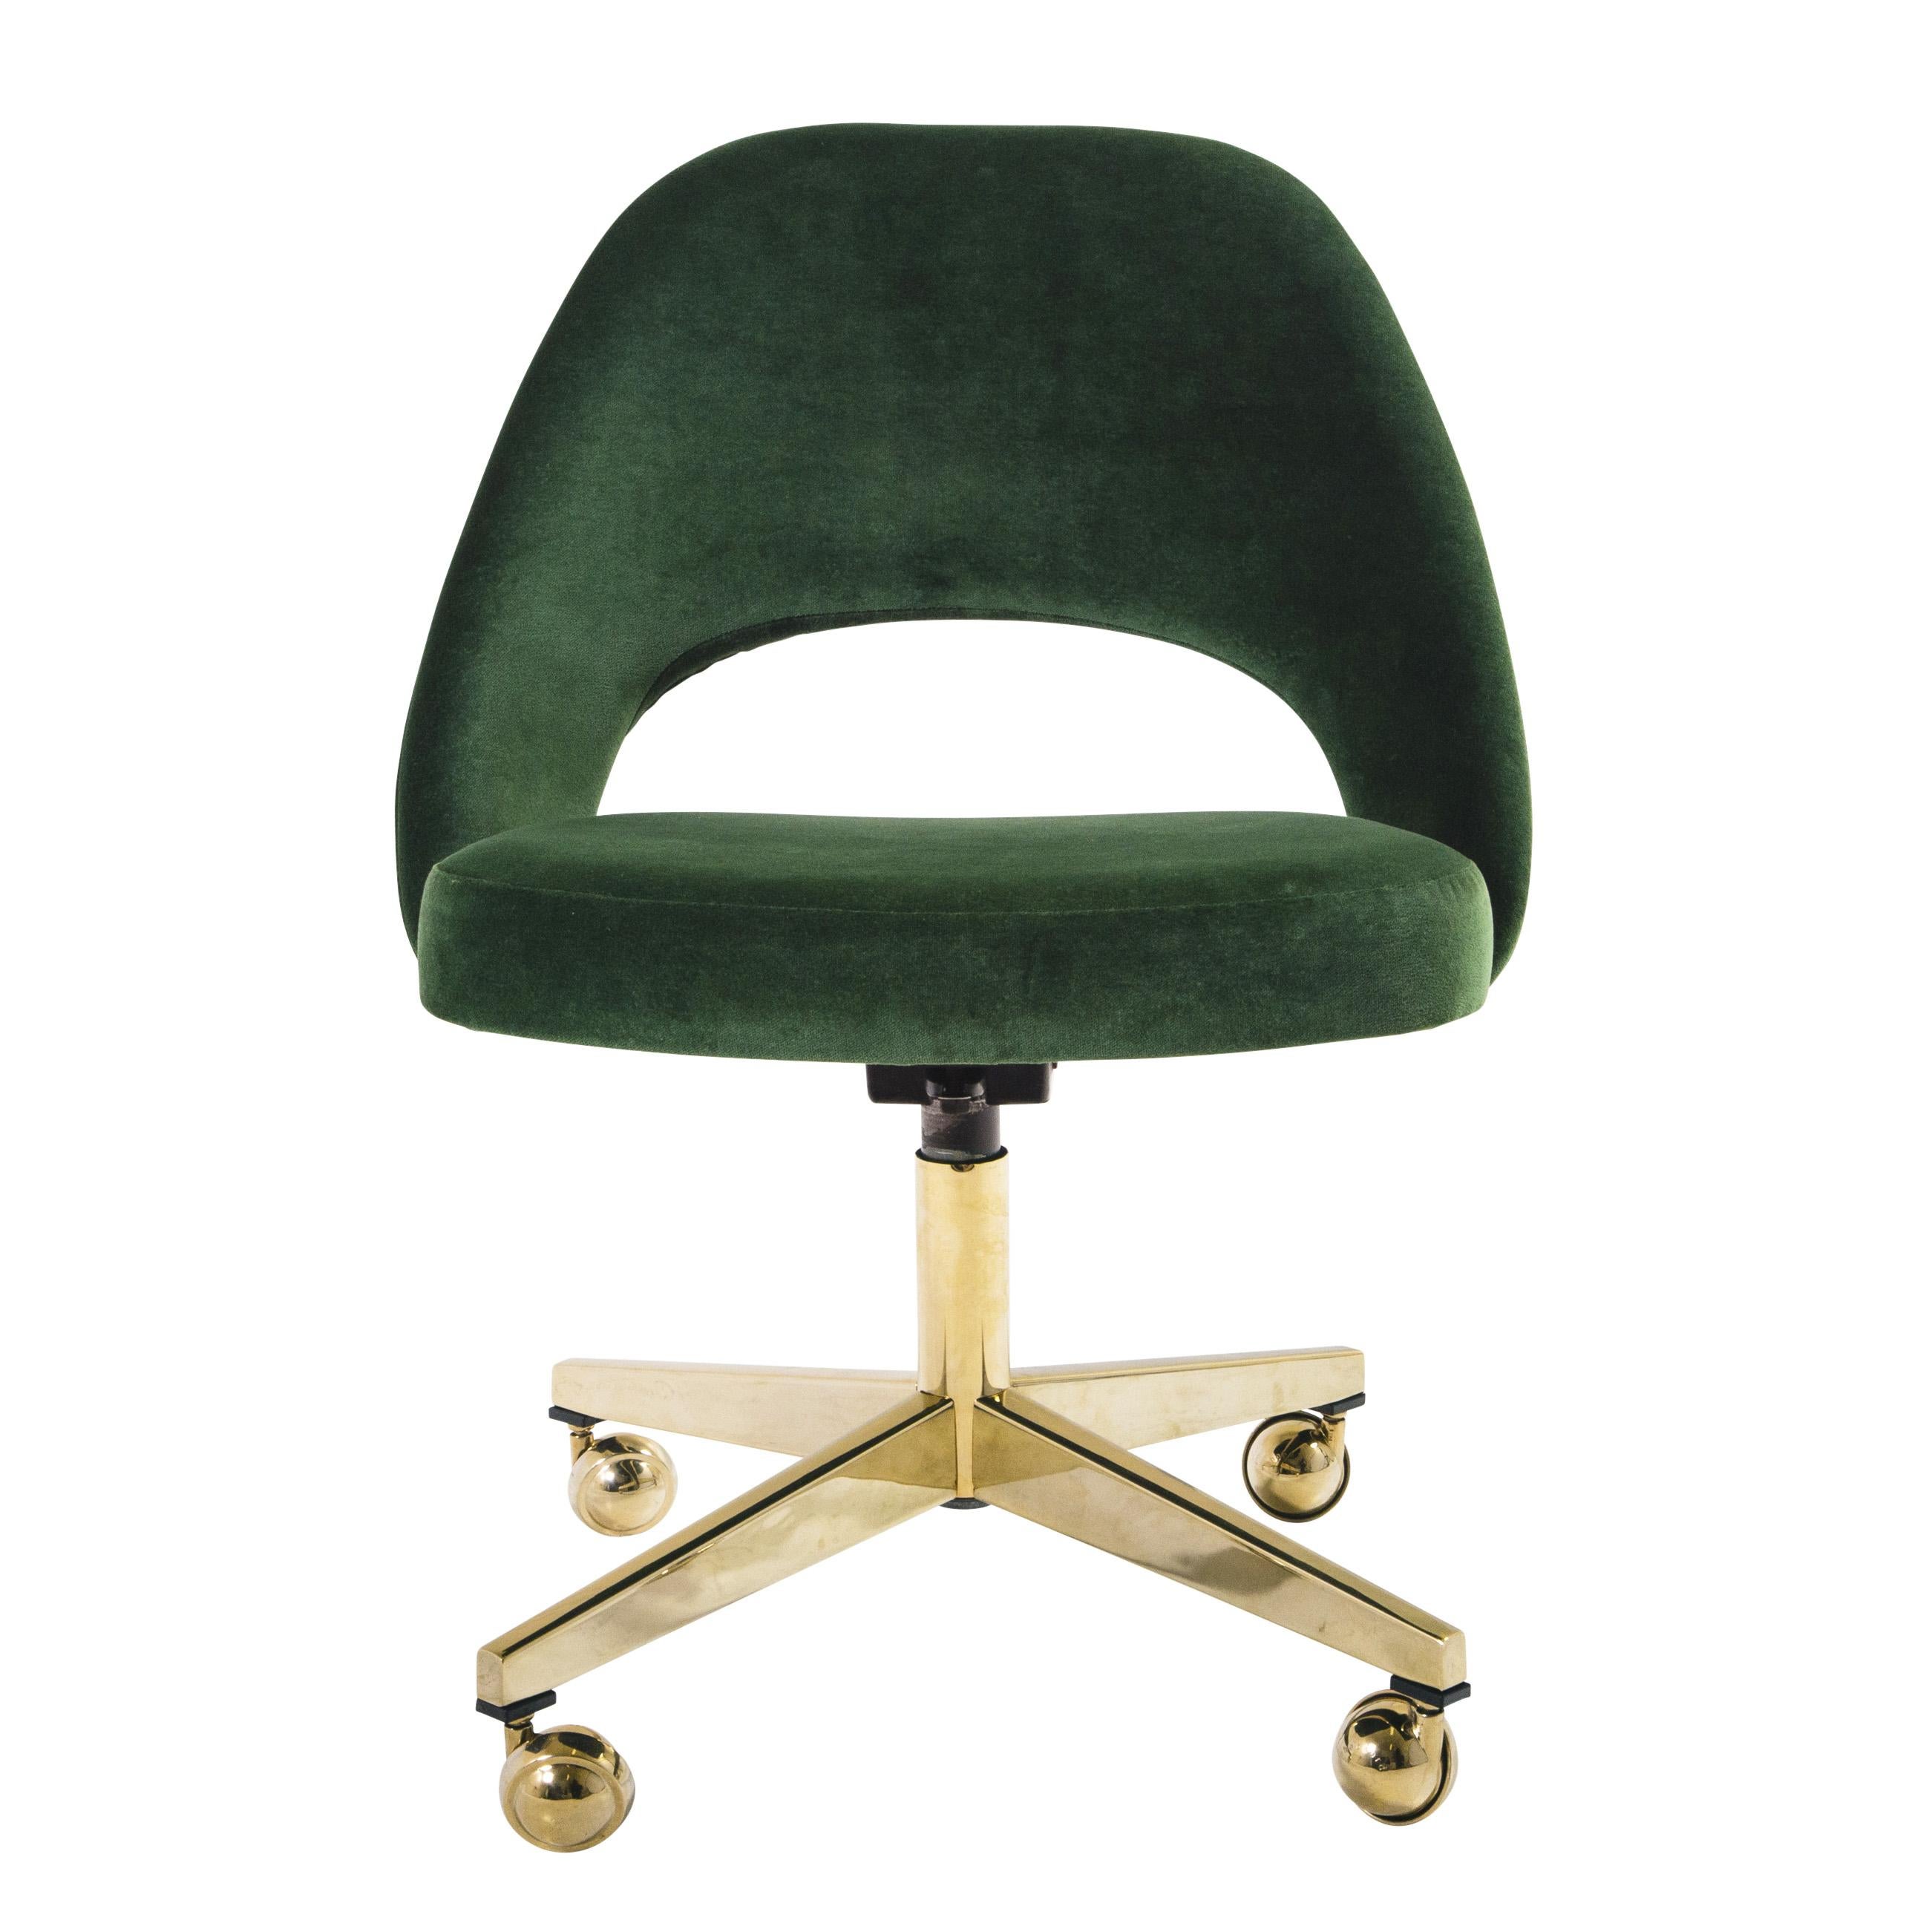 Wir restaurieren seit Jahren Saarinen Chefsessel in allen erdenklichen Stoffen, direkt in unserem eigenen Arbeitsraum. Wir haben diese Vintage-Stühle mit einem eleganten italienischen Samt in der Farbe Smaragdgrün restauriert. Erfahrene Handwerker